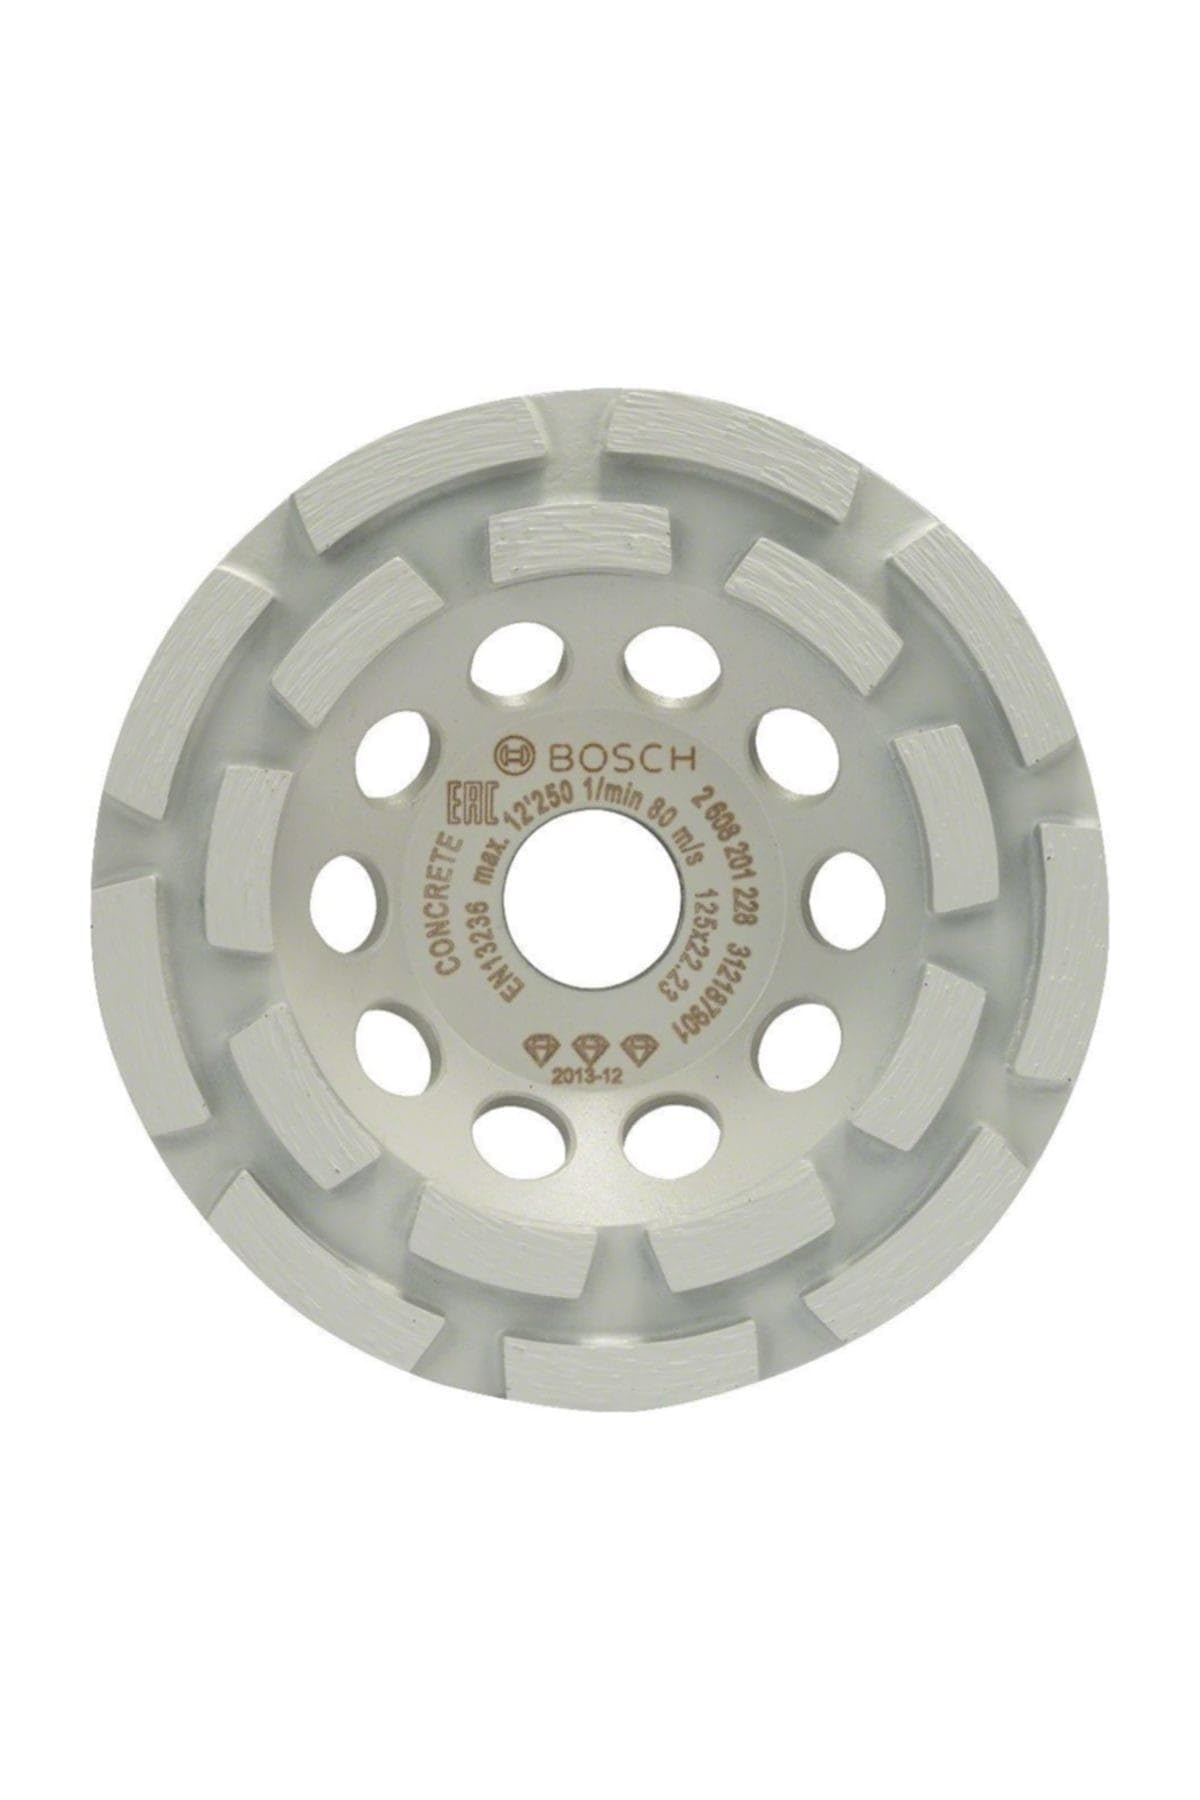 Bosch Accessories Bosch Professional Diamanttopfscheibe Best for Concrete 125 x 22,23 x 4,5 mm-10032839